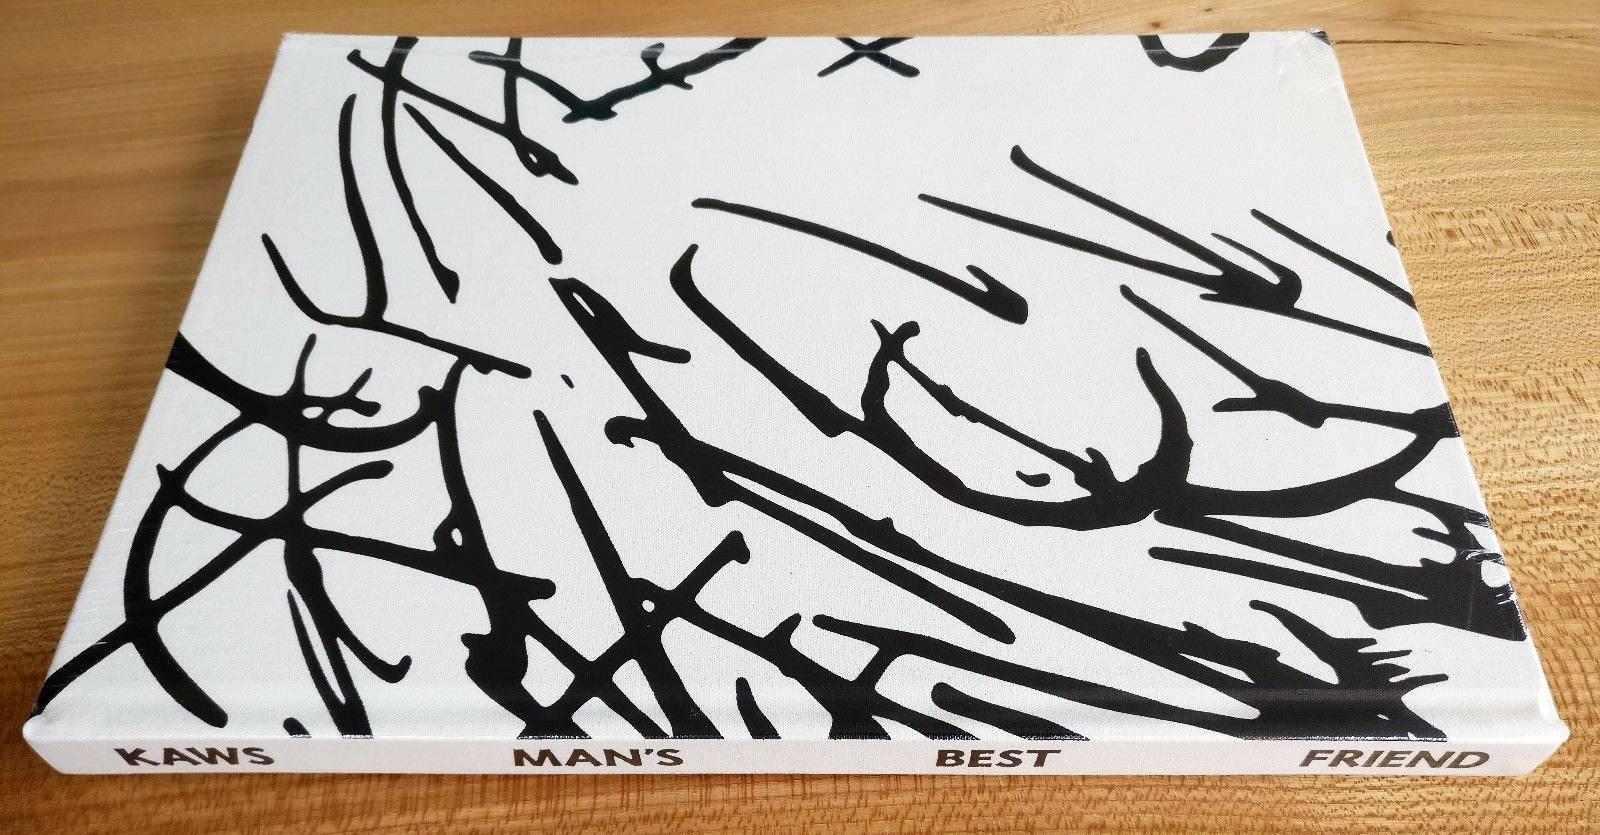 Kaws Man's Best Friend (Hardcover Book) - Pop Art Art by KAWS